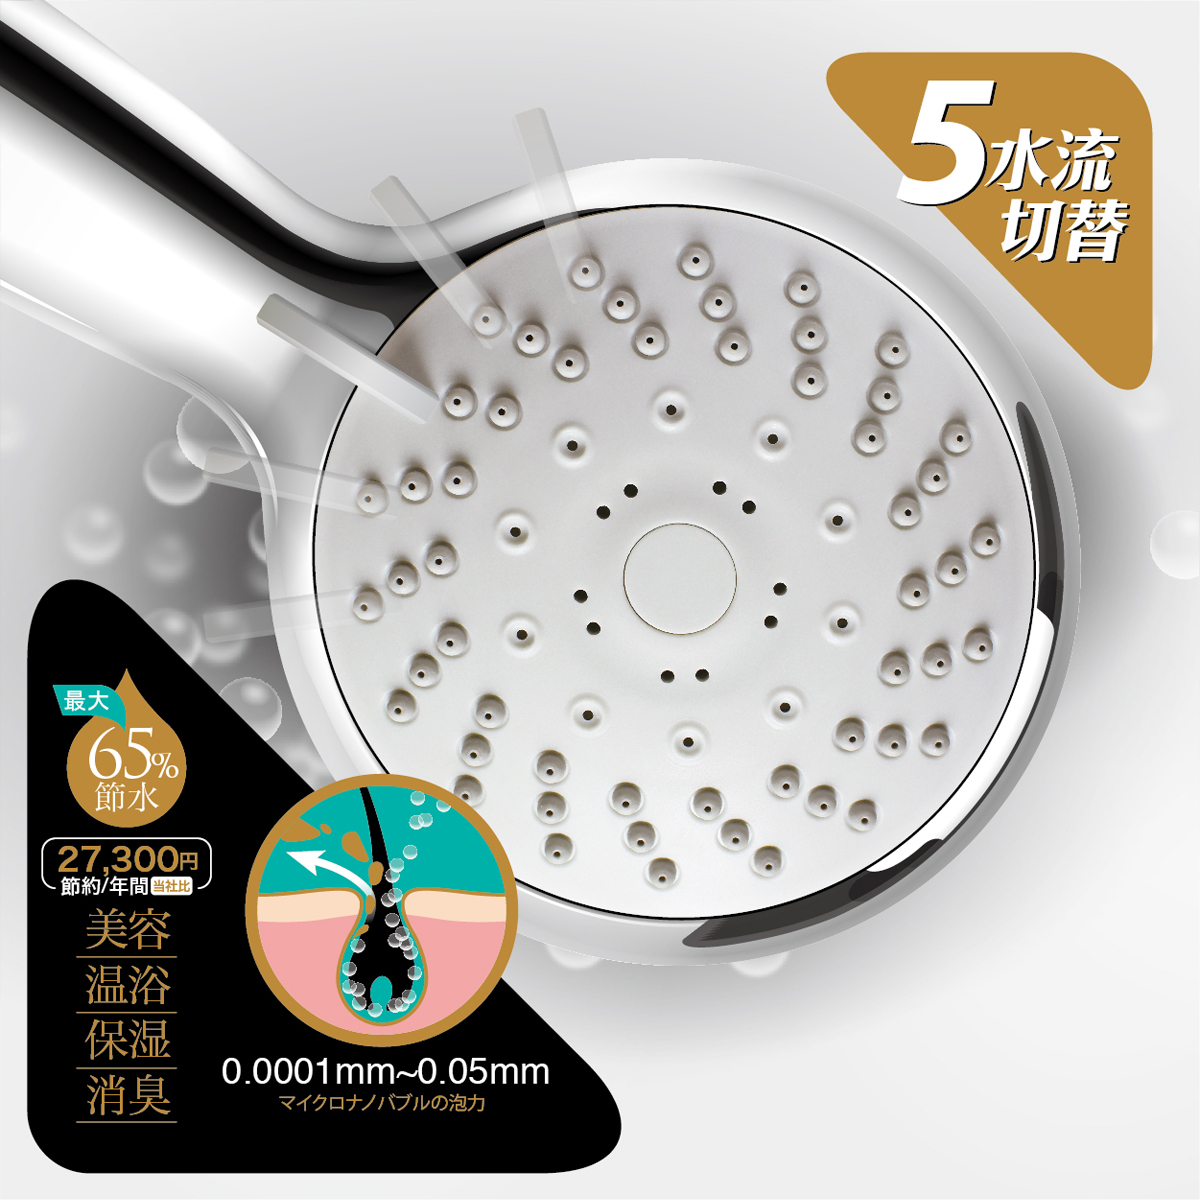 ポイントアップ シャワーヘッド 大幅にプライスダウン マイクロナノバブル 格安 価格でご提供いたします 節水 水圧アップ アクアビュル ボヌール 雑誌で総合1位獲得 シャワーヘッドAQBLAQUA 美容 sliver ボヌール節水 日本製 Bonheur BULLE 温浴 保湿 消臭